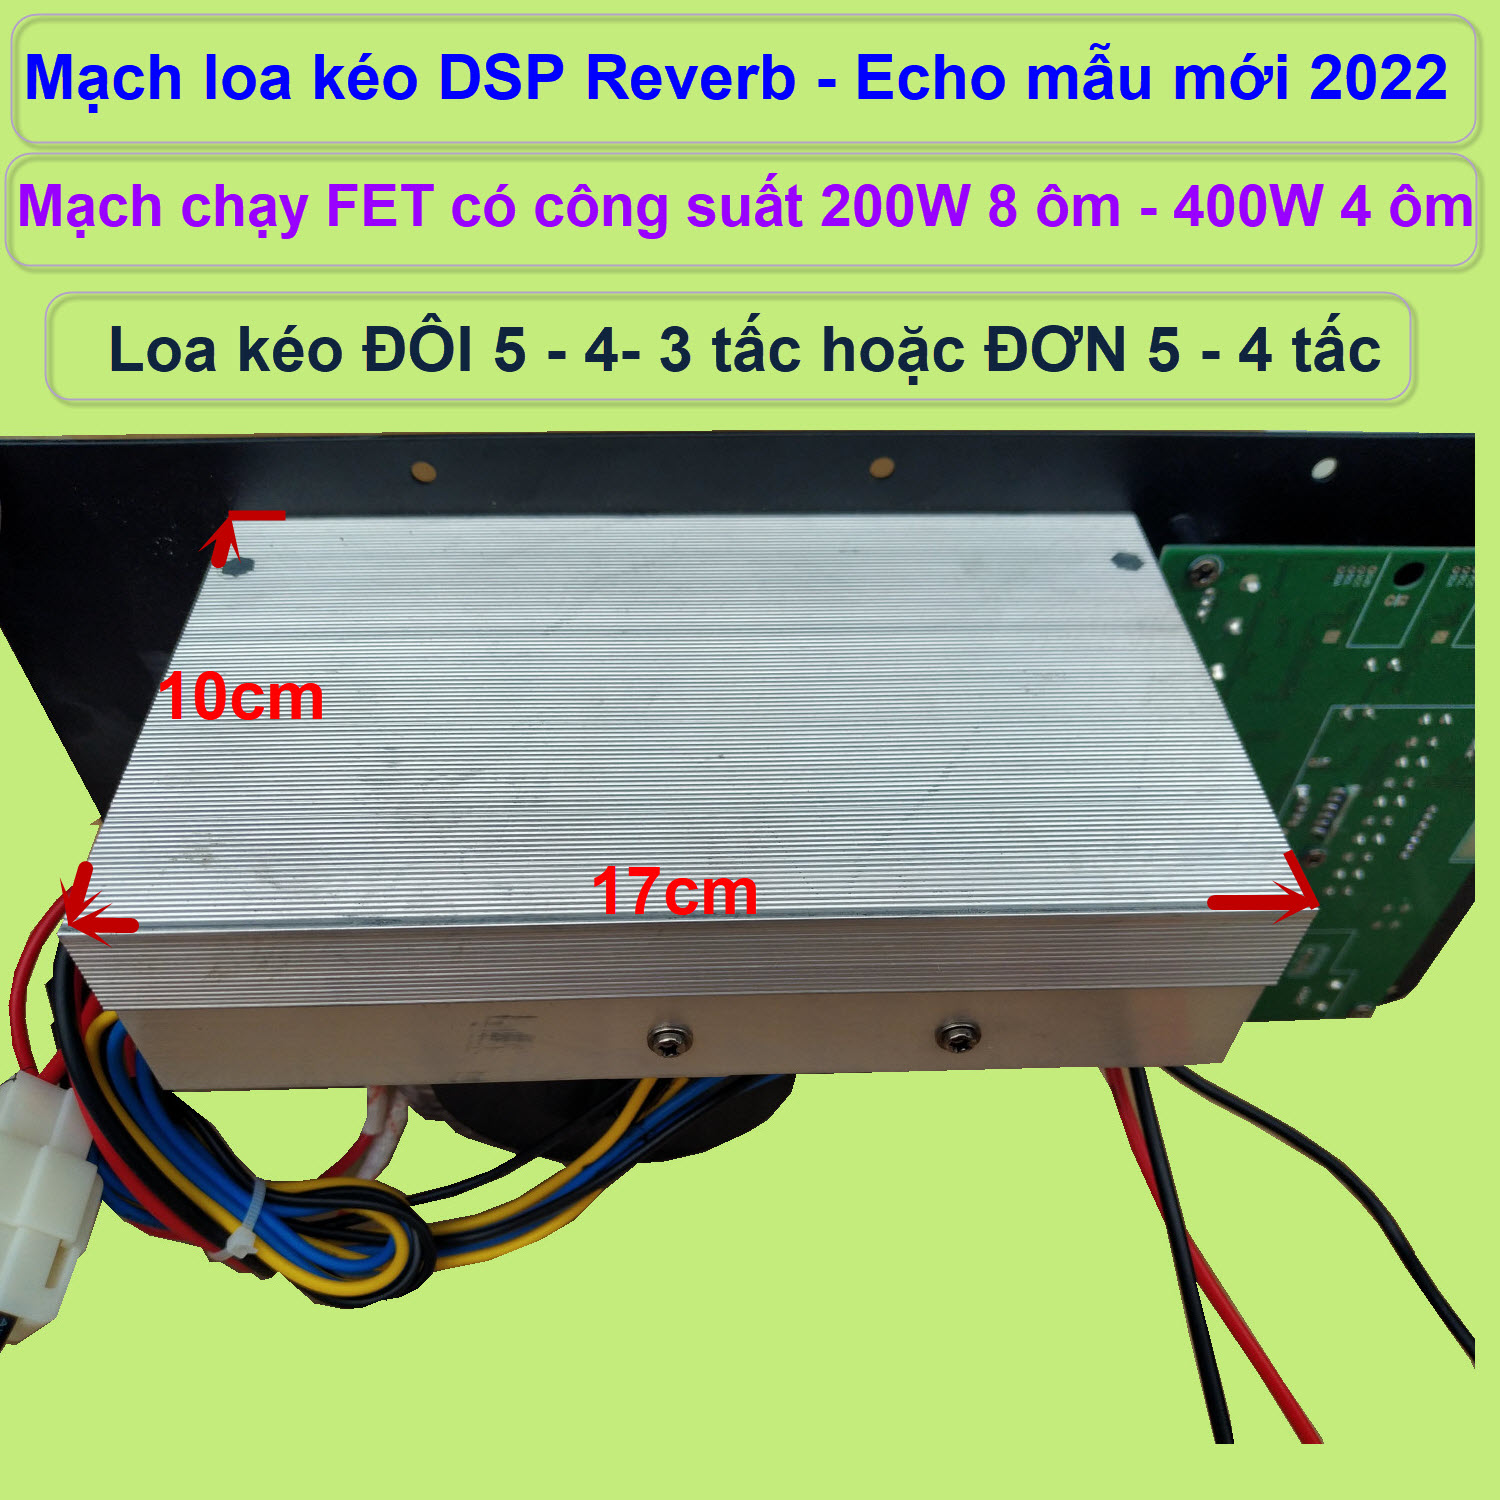 Mạch loa kéo Reverb Echo DSP dùng FET công suất 200W 8 ôm – 400W 4 ôm, loa kéo ĐÔI 5 – 4 – 3 tấc hoặc loa kéo ĐƠN 5 – 4 tấc - DỌC